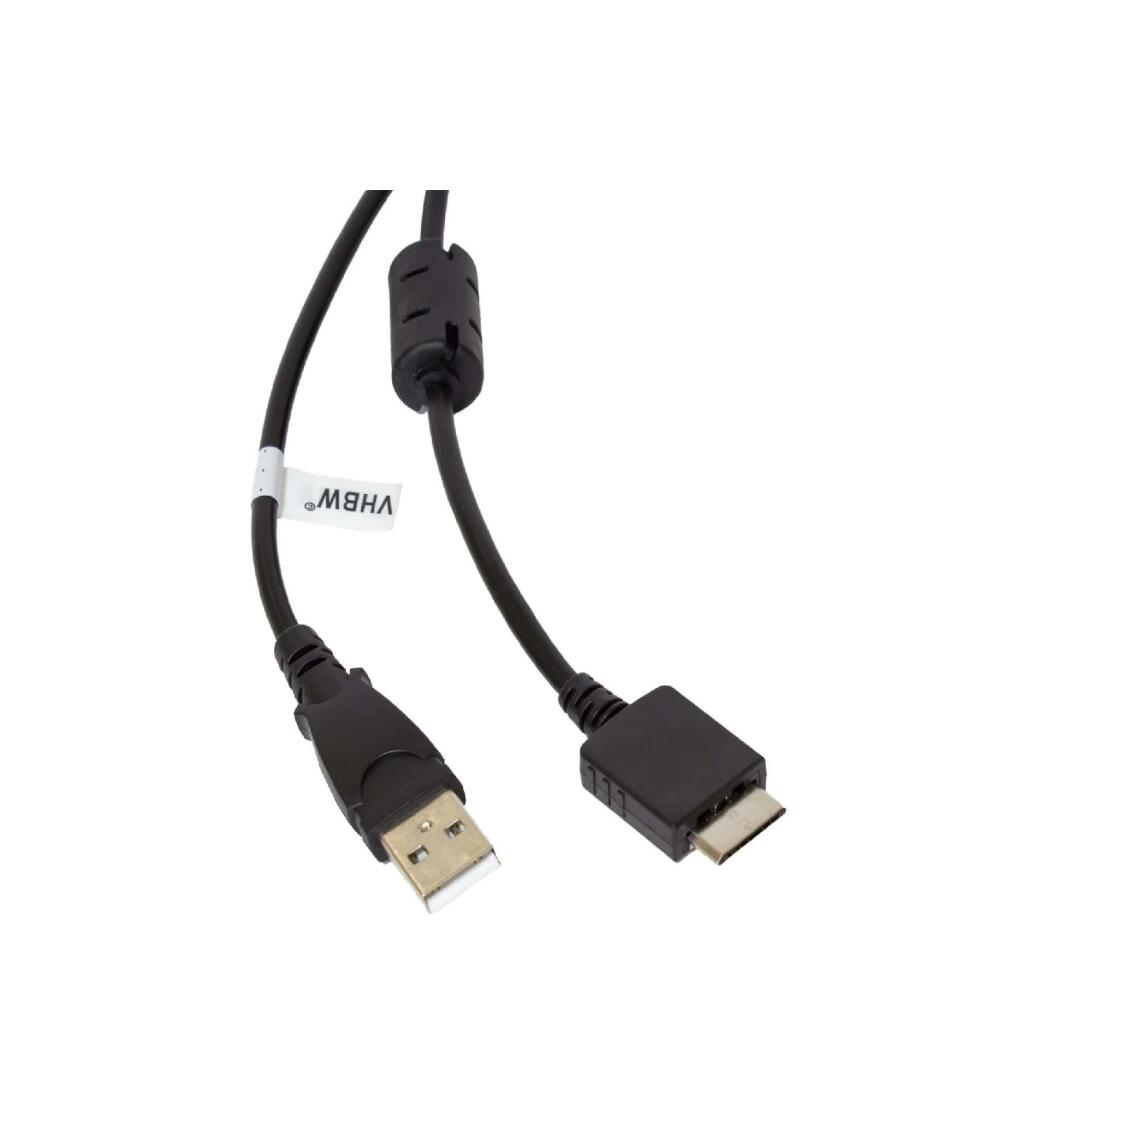 Vhbw - vhbw câble de données USB (type A sur lecteur MP3) câble de chargement compatible avec Sony Walkman NWZ-S736FBNC, NWZ-S738F lecteur MP3 - noir, 150cm - Alimentation modulaire